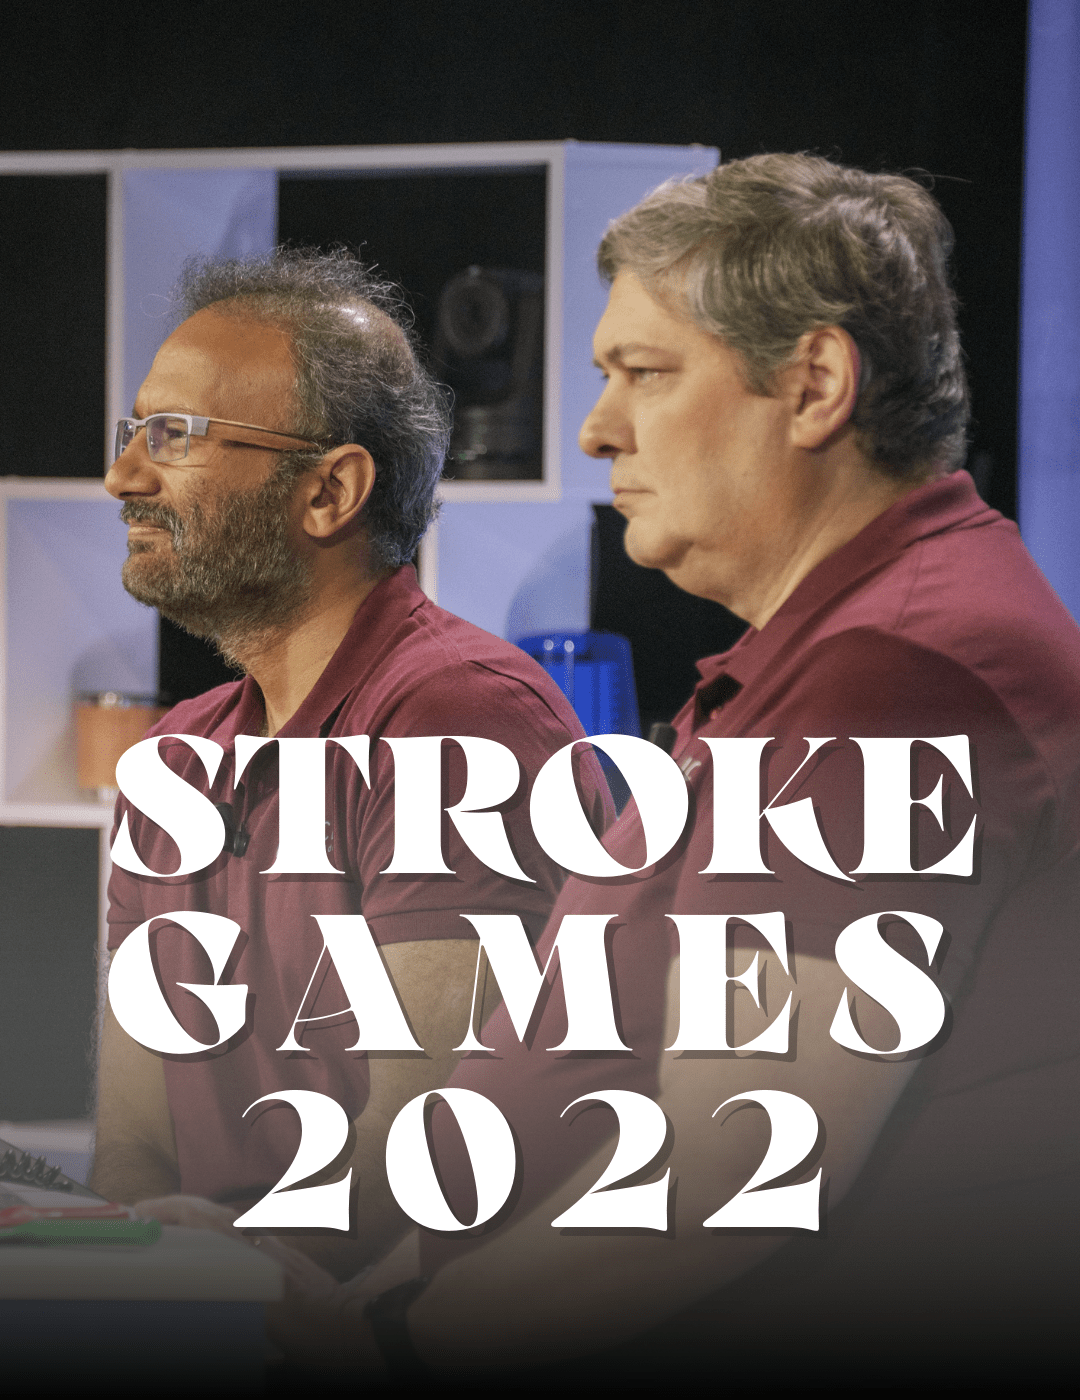 STROKE GAME 2022